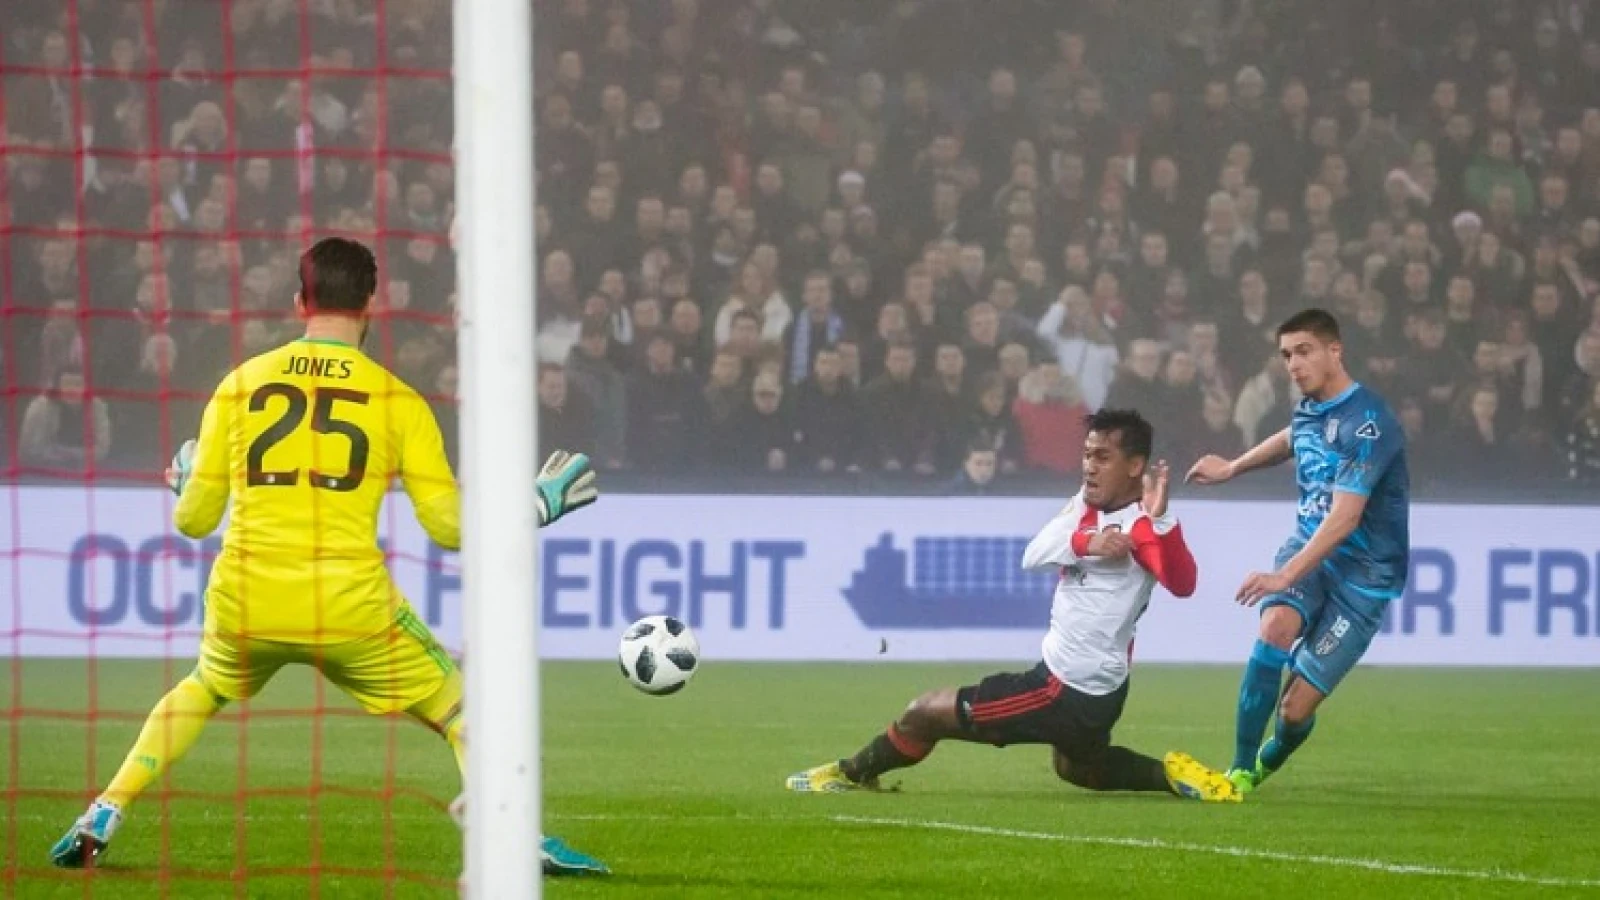 Heracles-ster deelt topscorersplek met Feyenoord-idool: 'Hoe snel kan het gaan'